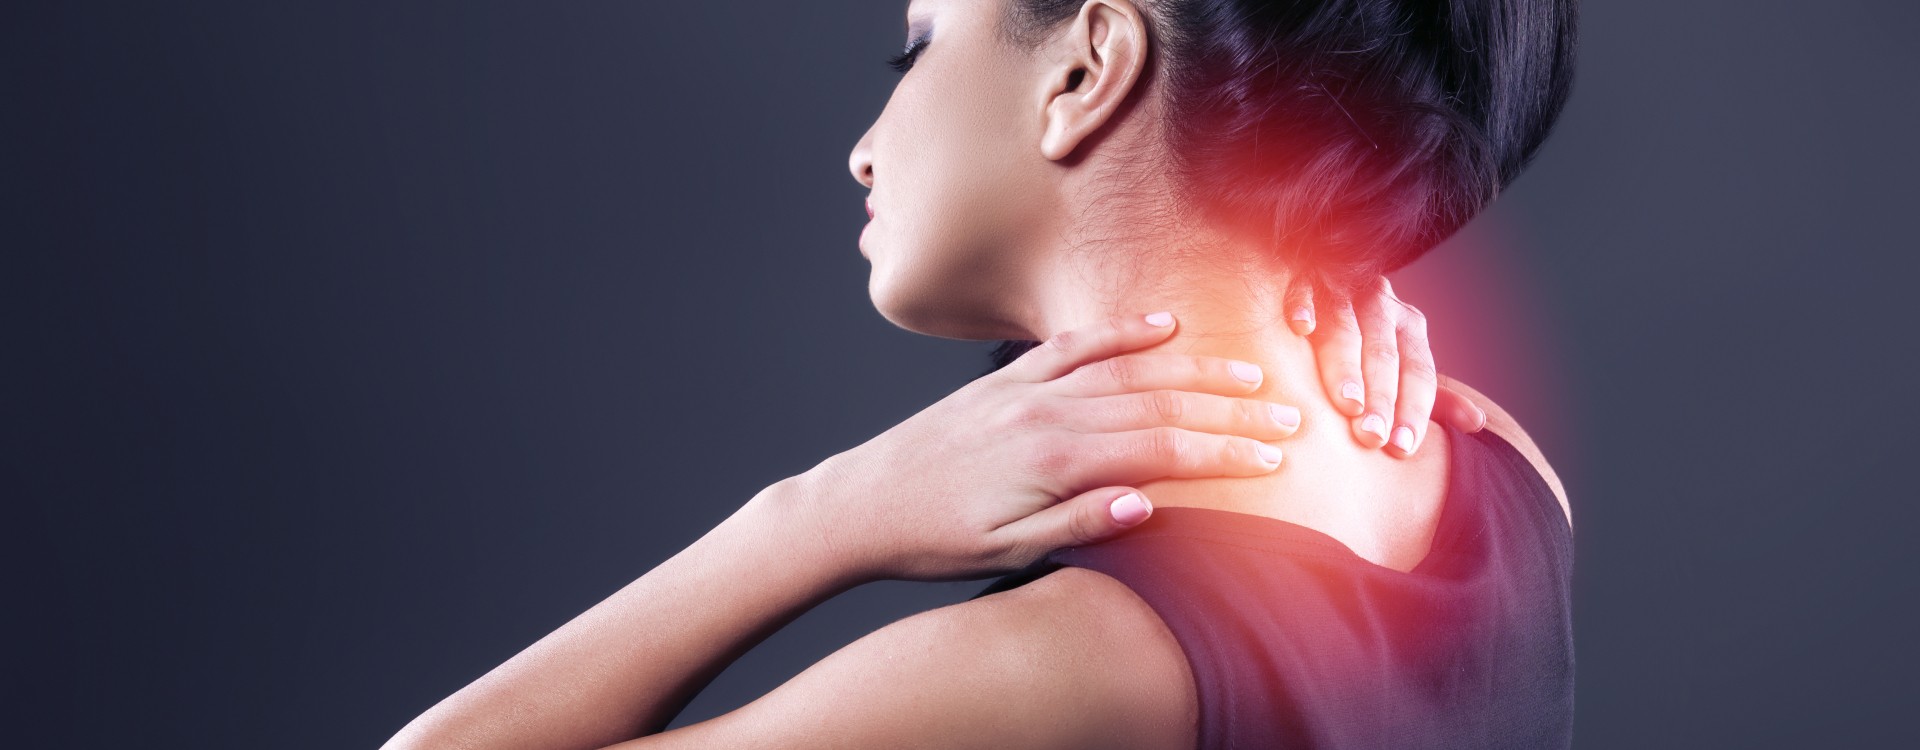 Sposoby na bóle mięśni i stawów - wyjaśniamy jak sobie z nimi poradzić